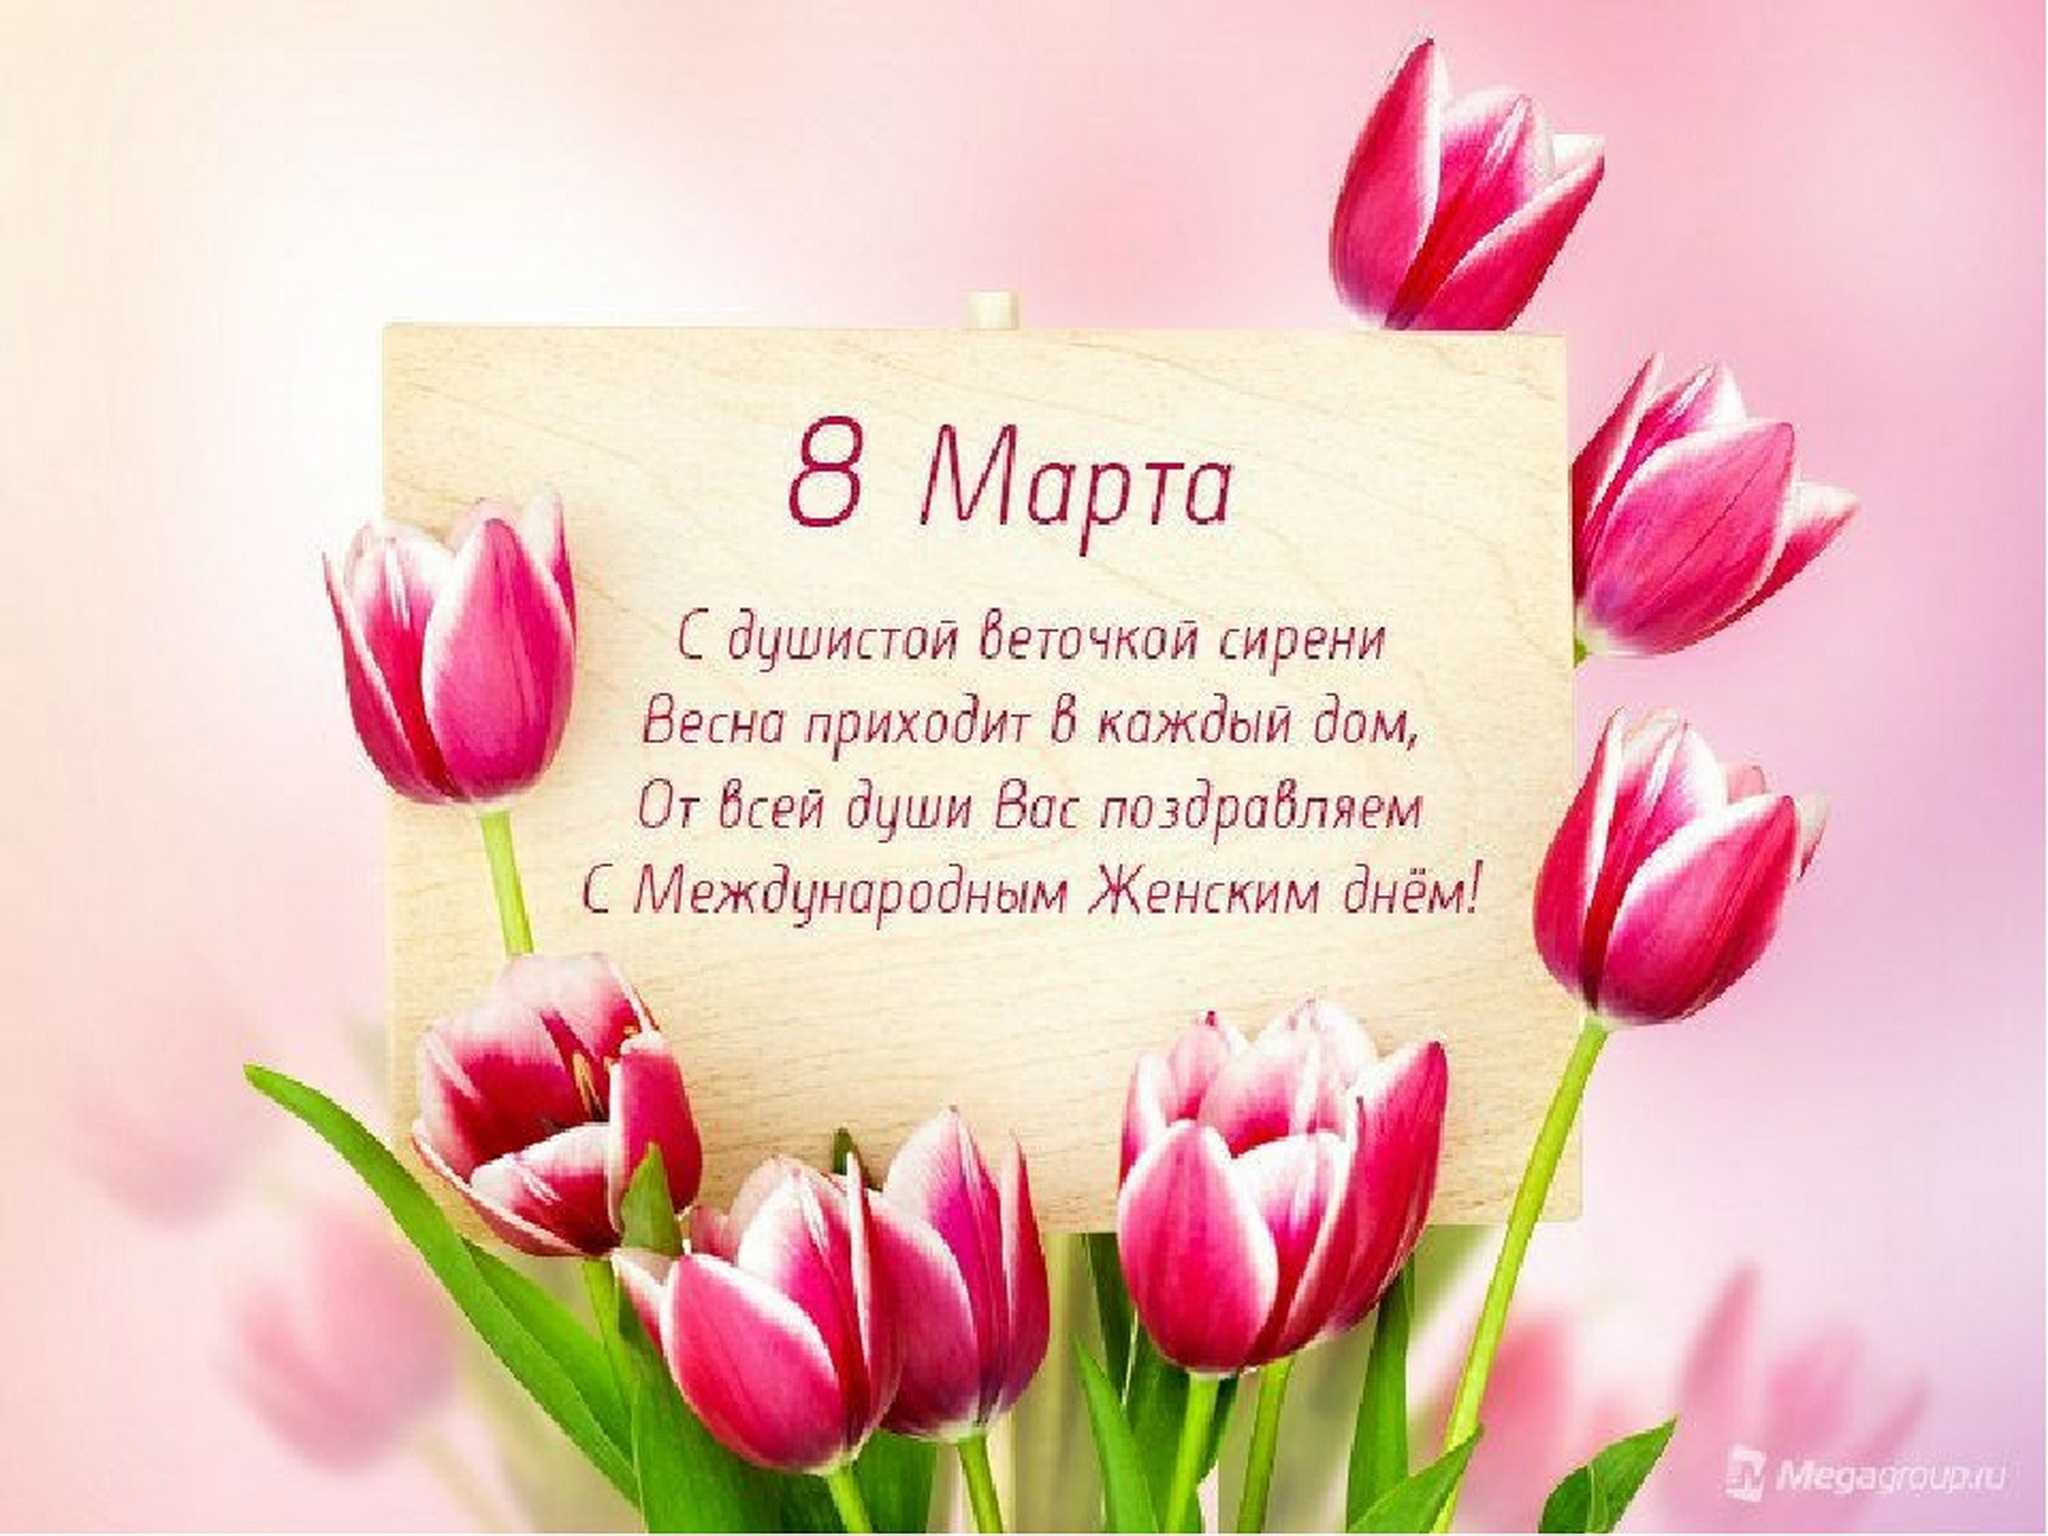 Бесплатная открытка Поздравление с 8 марта и розовыми тюльпанами